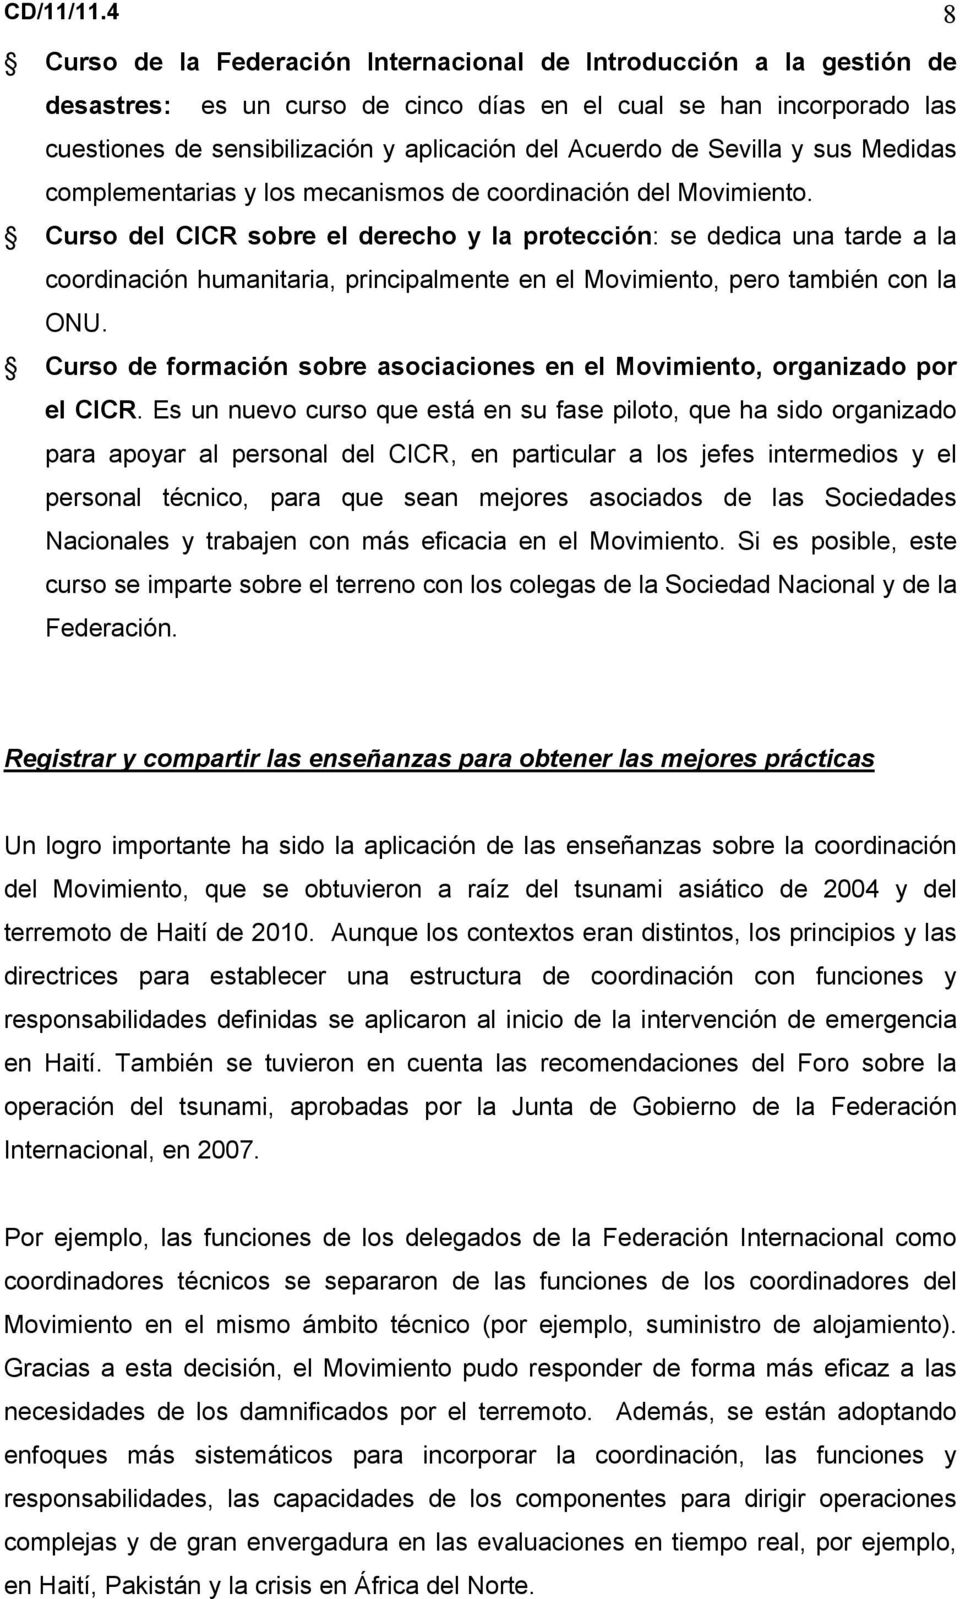 de Sevilla y sus Medidas complementarias y los mecanismos de coordinación del Movimiento.